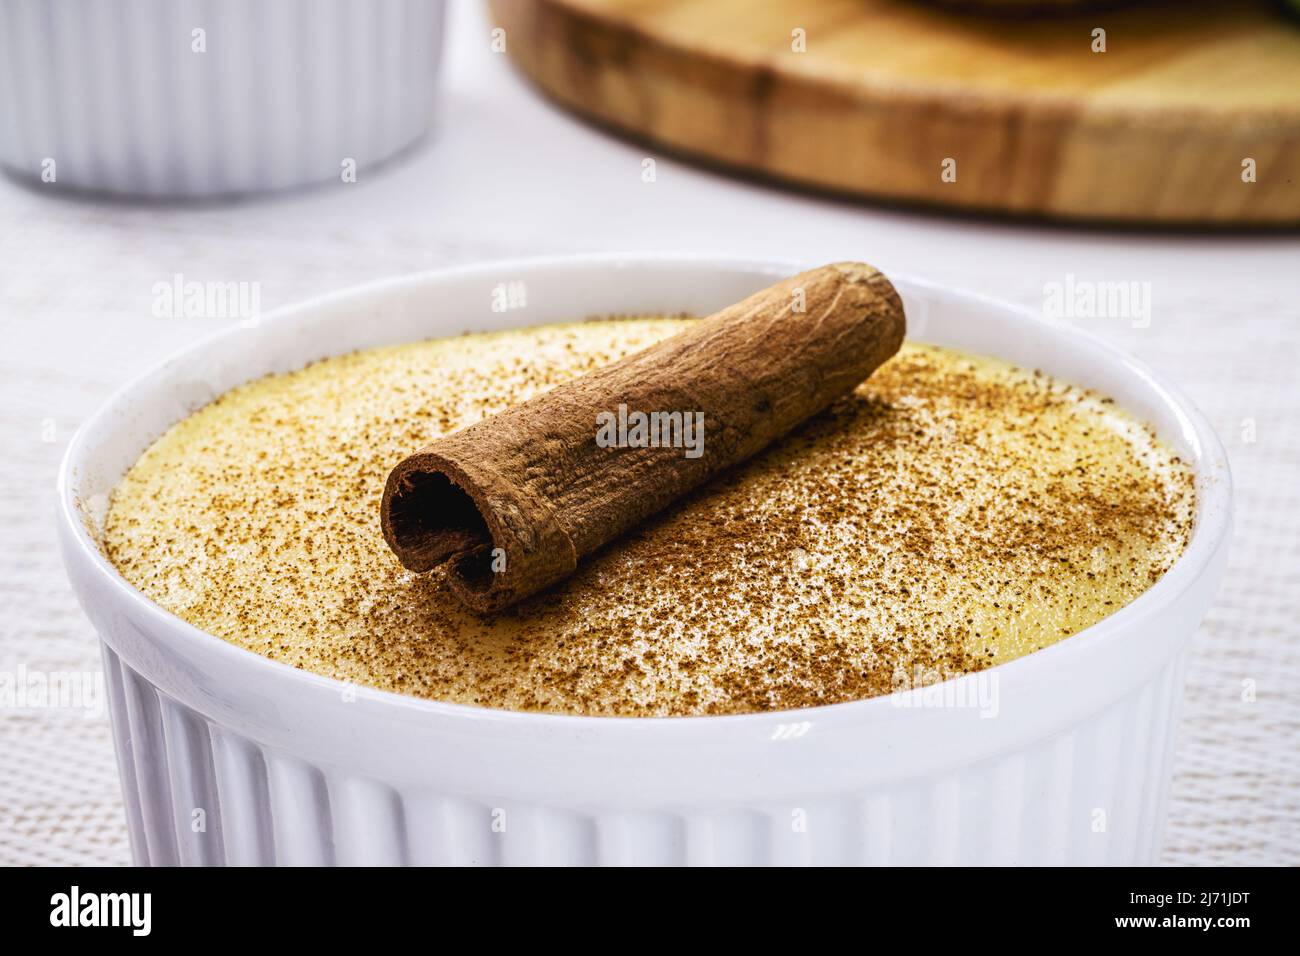 Le maïs sucré brésilien, appelé Curau, jimbelê ou canjica est une spécialité typique de la cuisine brésilienne. Décoration avec poudre de cannelle et bâton. Banque D'Images